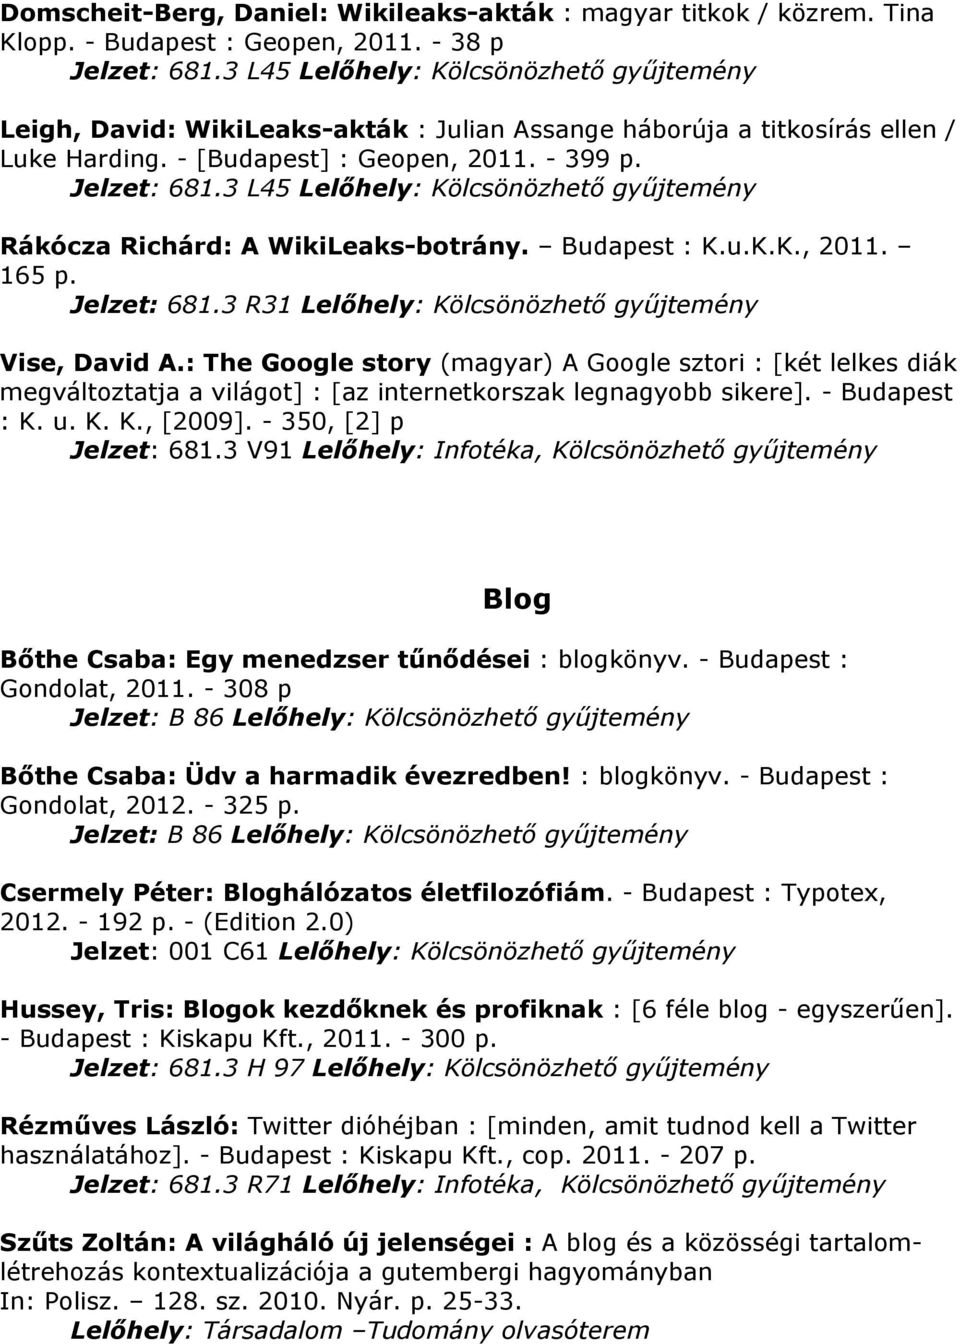 3 L45 Lelőhely: Rákócza Richárd: A WikiLeaks-botrány. Budapest : K.u.K.K., 2011. 165 p. Jelzet: 681.3 R31 Lelőhely: Vise, David A.